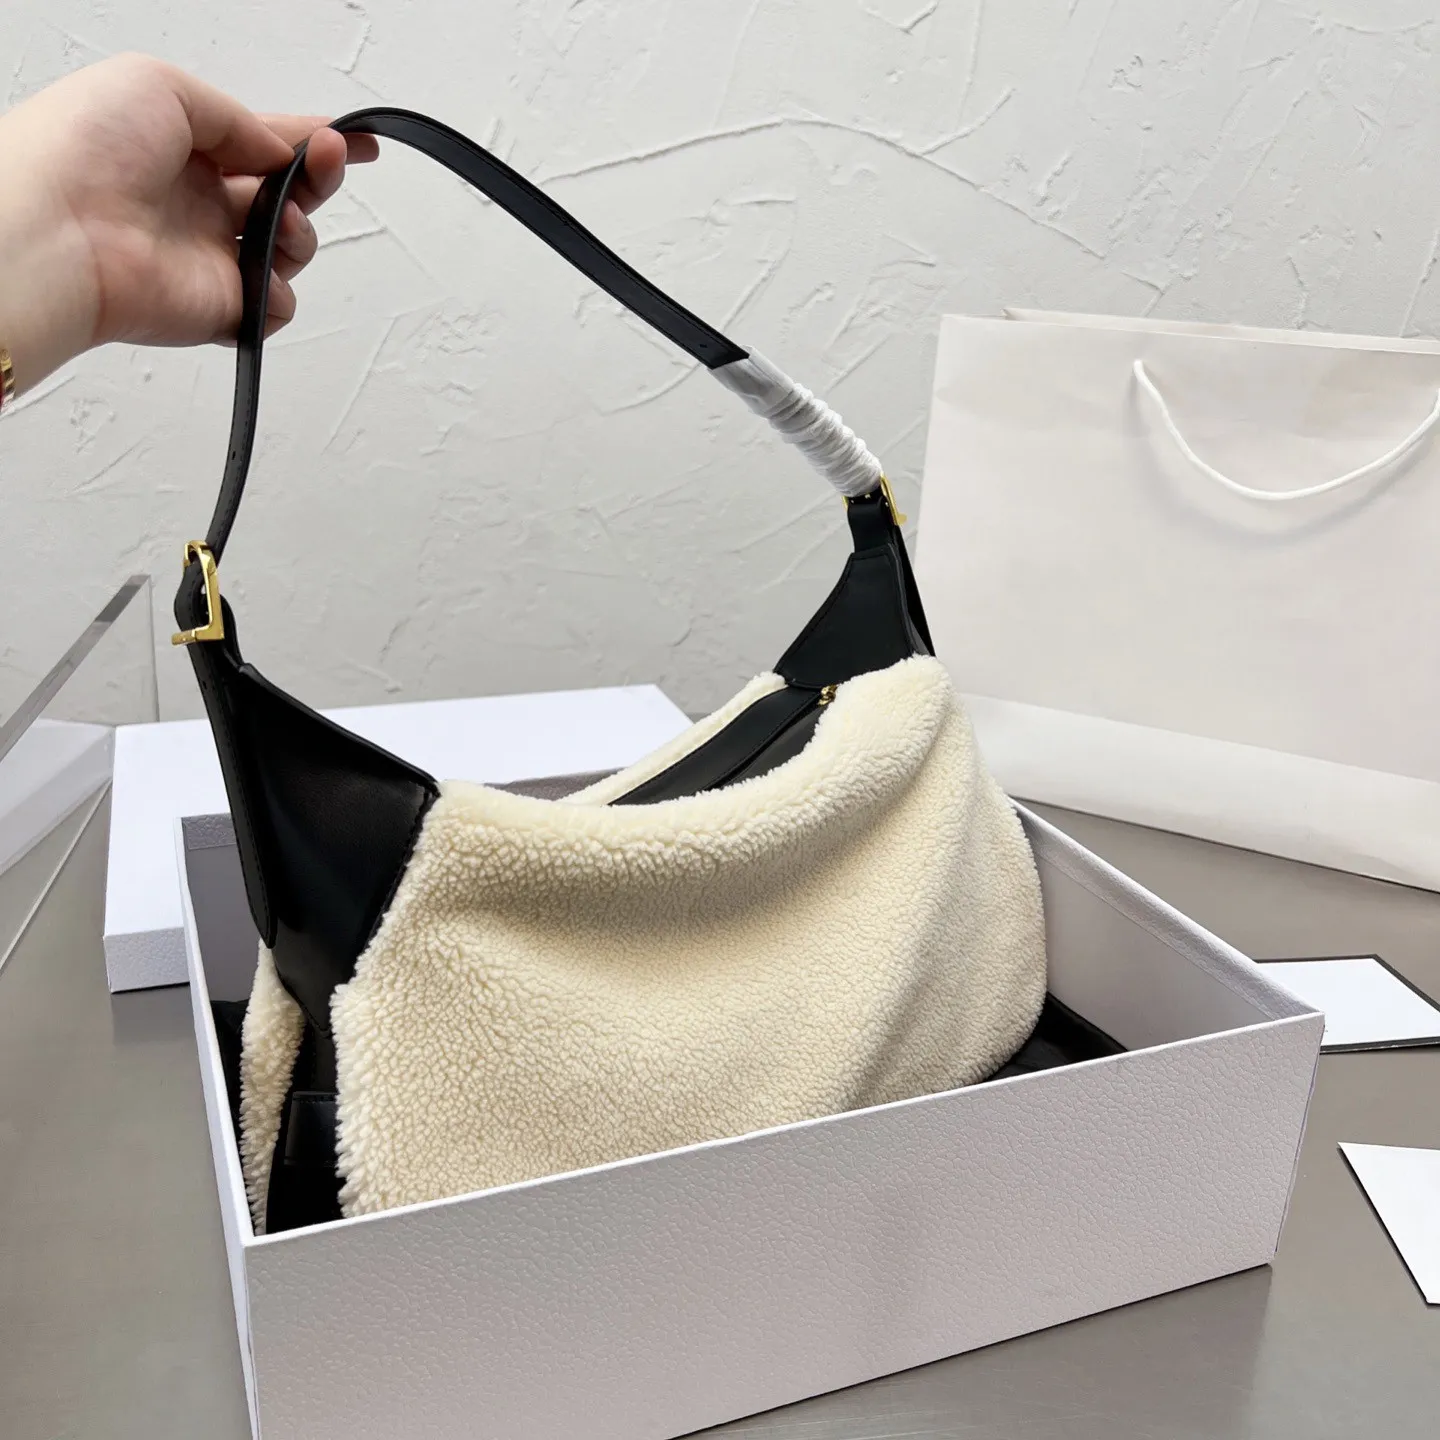 Cabelo de cordeiro costurado couro feminino bolsa de ombro macio bolsa quente cor pura estilo casual vagabundos sacos de compras de moda ao ar livre bolsas bolsa de moda